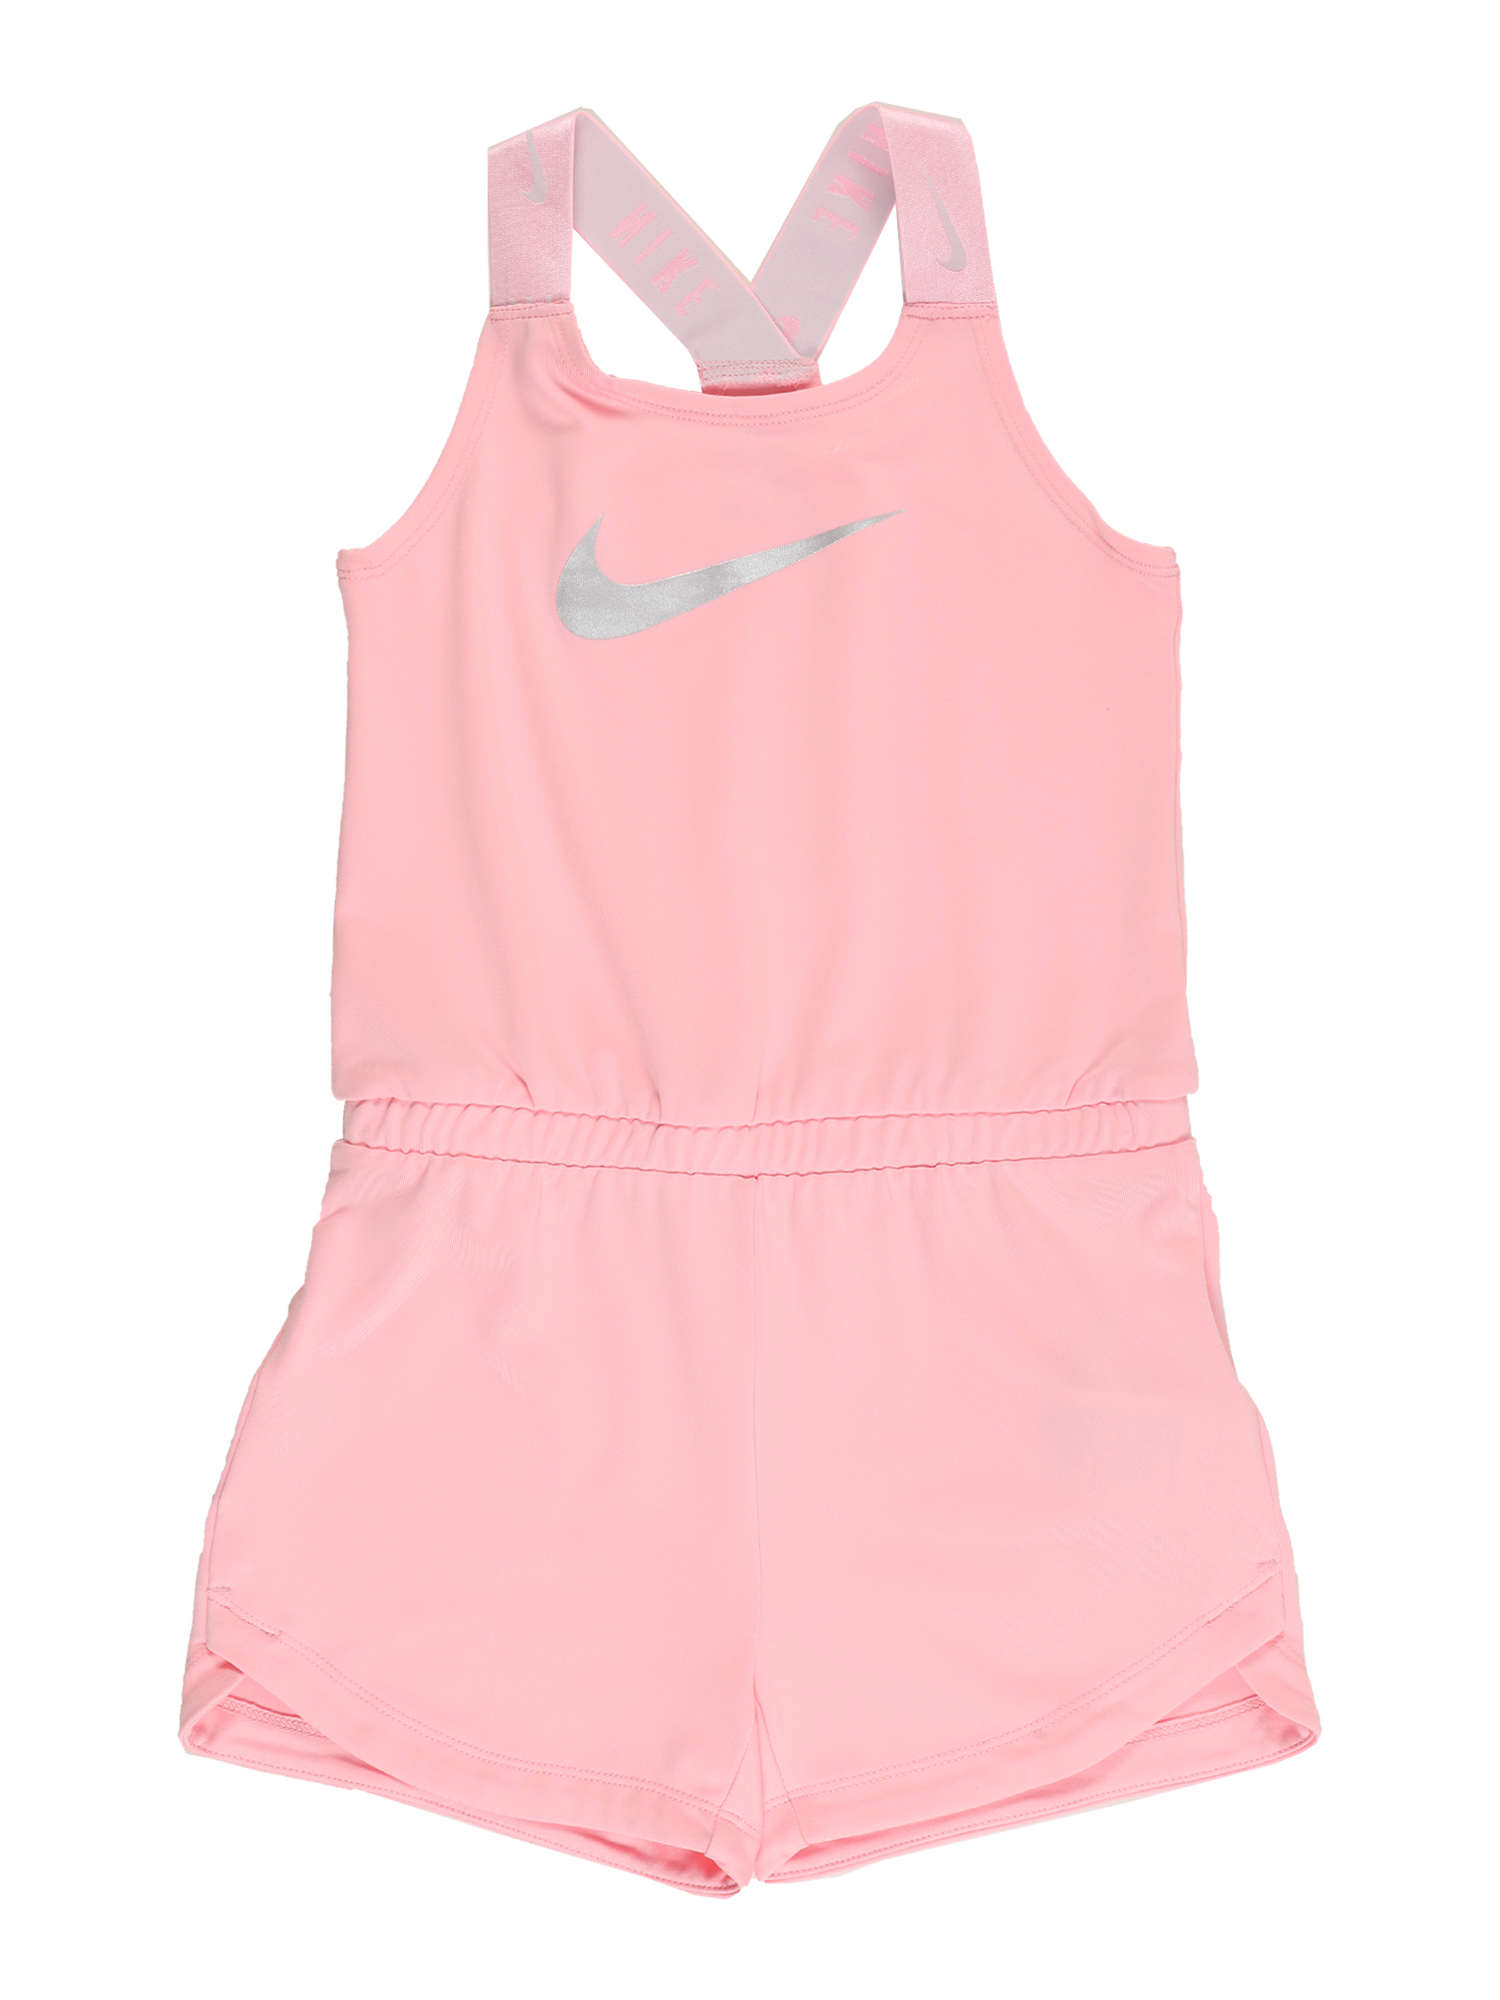 Bimba Bambini Nike Sportswear Tuta in Rosa Chiaro 